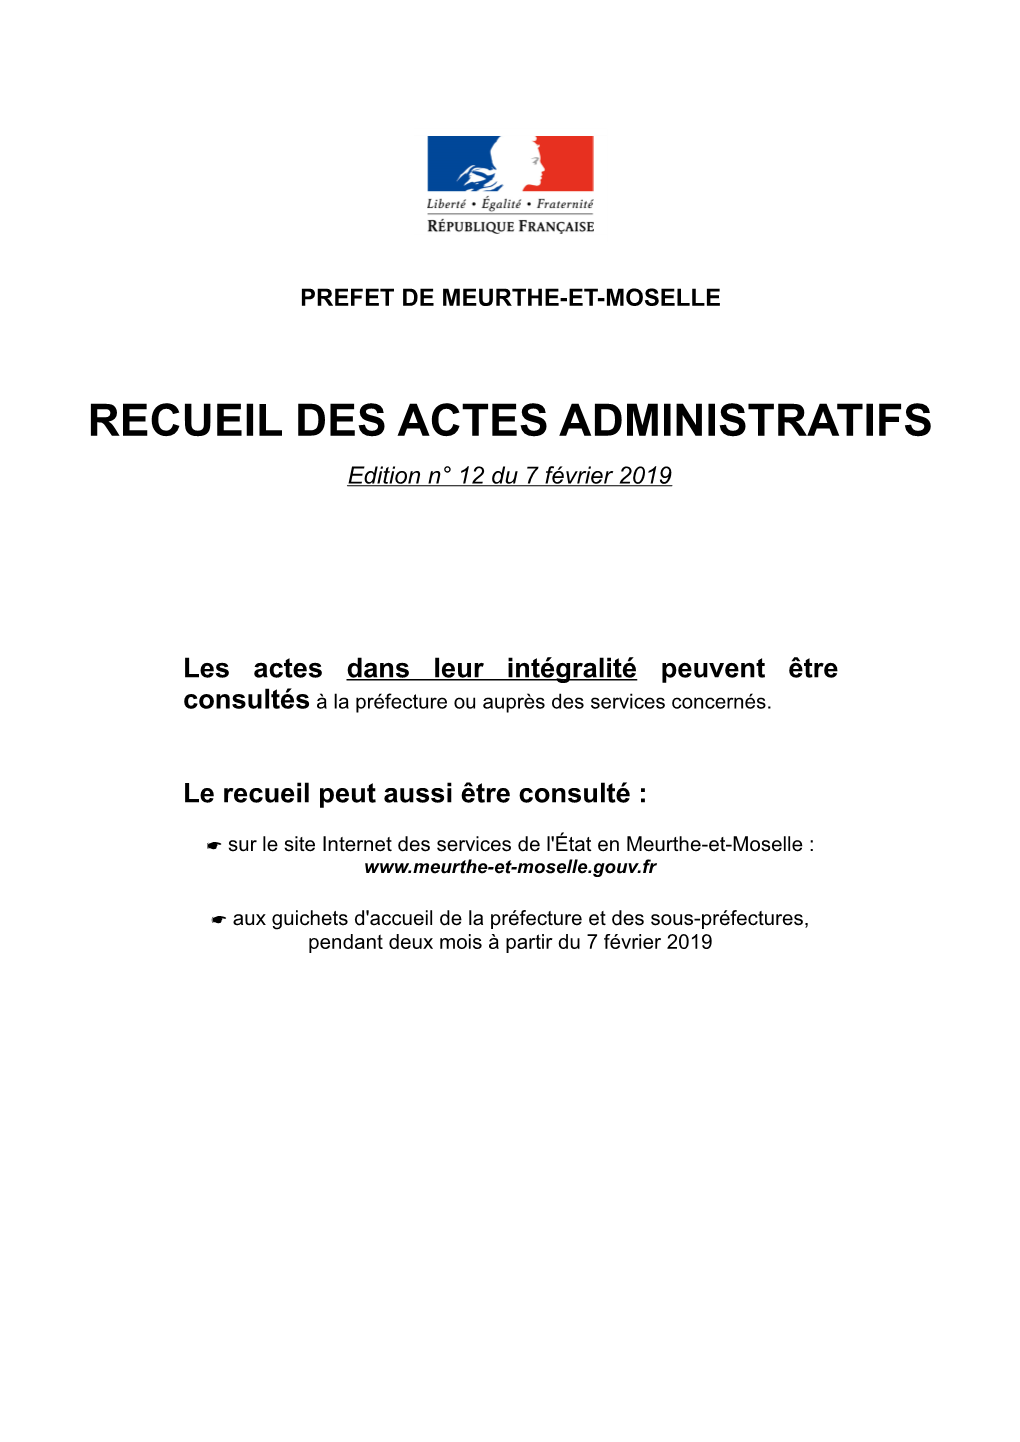 RECUEIL DES ACTES ADMINISTRATIFS Edition N° 12 Du 7 Février 2019